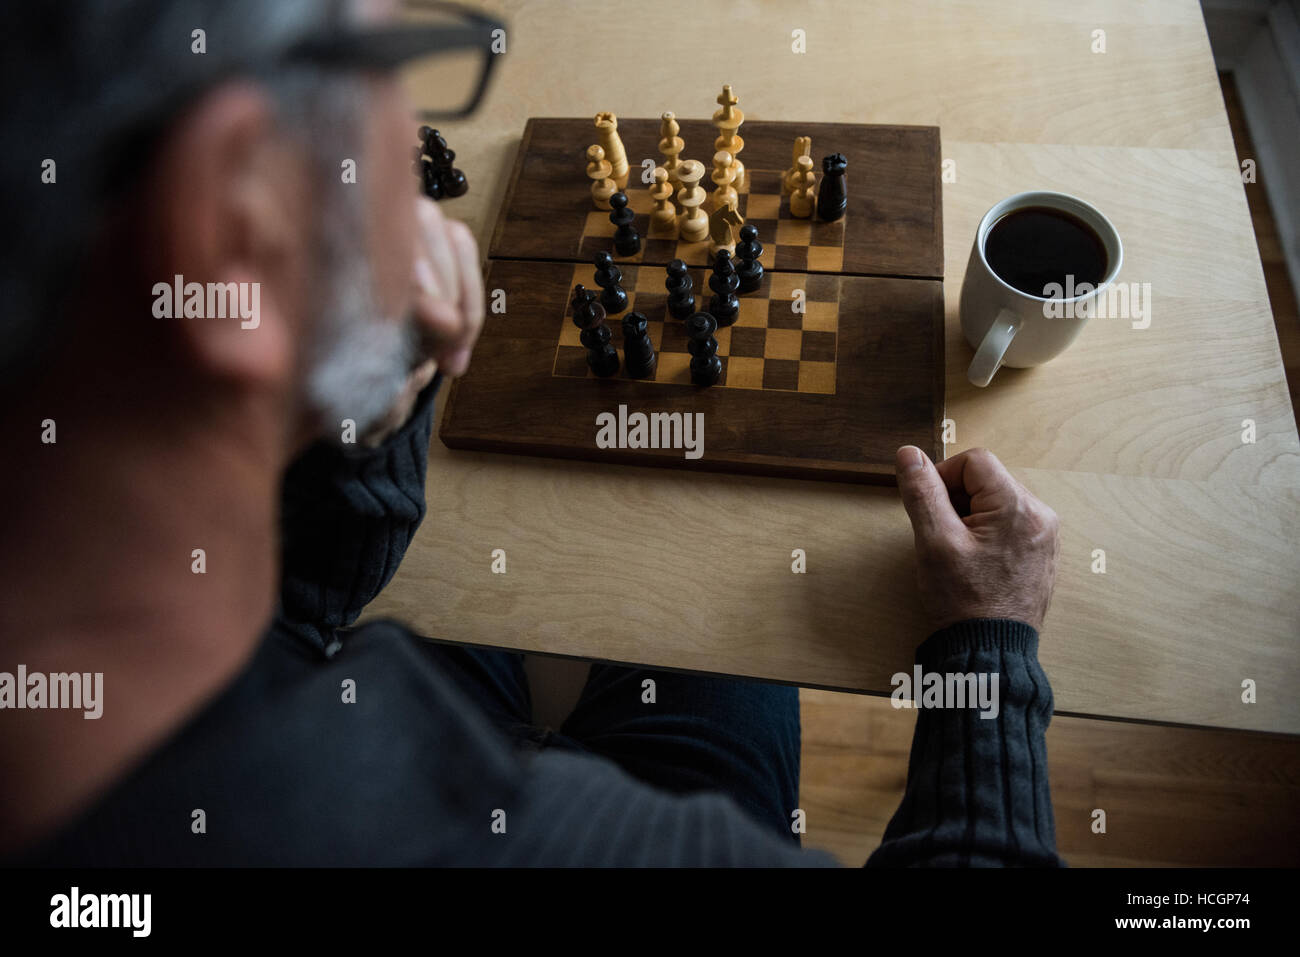 Attentive man playing chess Stock Photo